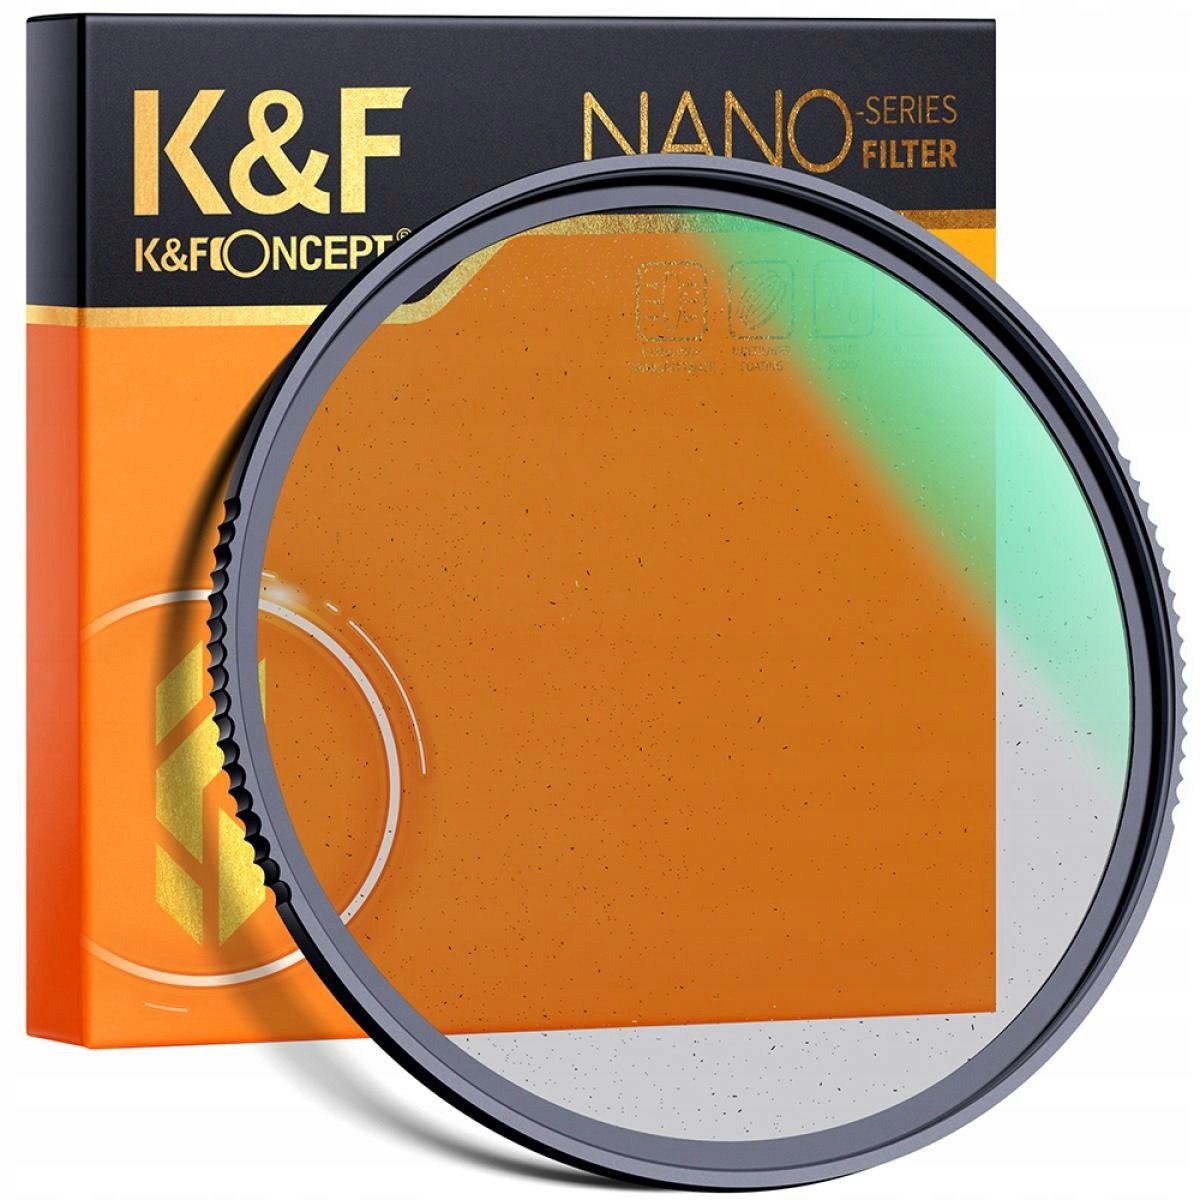 K&F FILTR dyfuzyjny Black Mist 1/4 NanoX 49mm